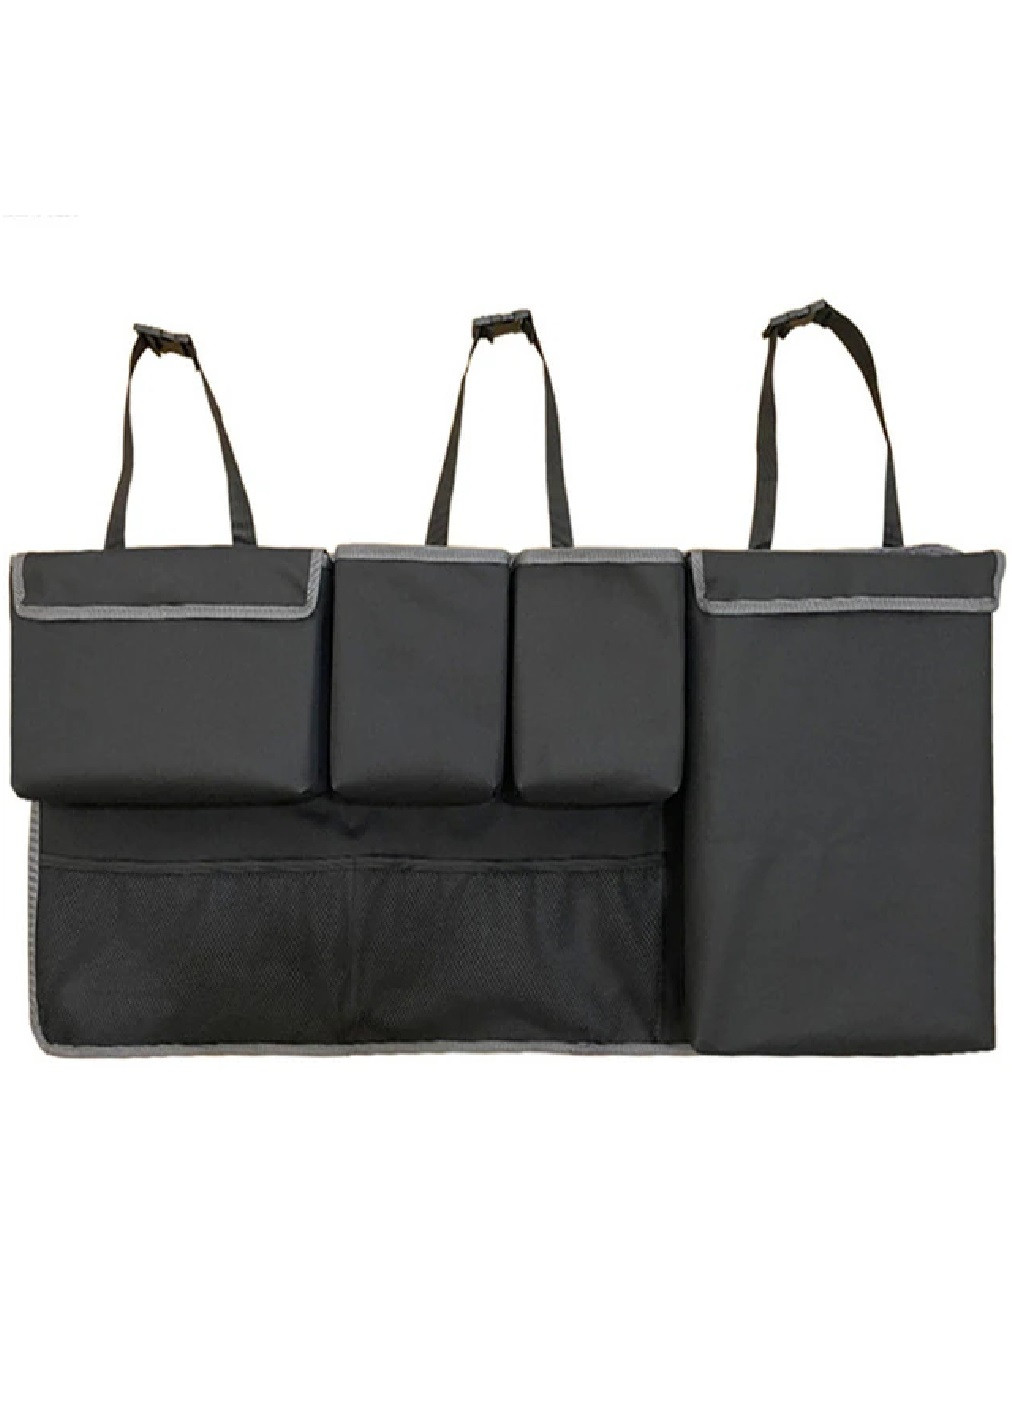 Автомобильный подвесной компактный органайзер на спинку сидения для багажника 100х45 см (474976-Prob) Черный с серым Unbranded (260537337)